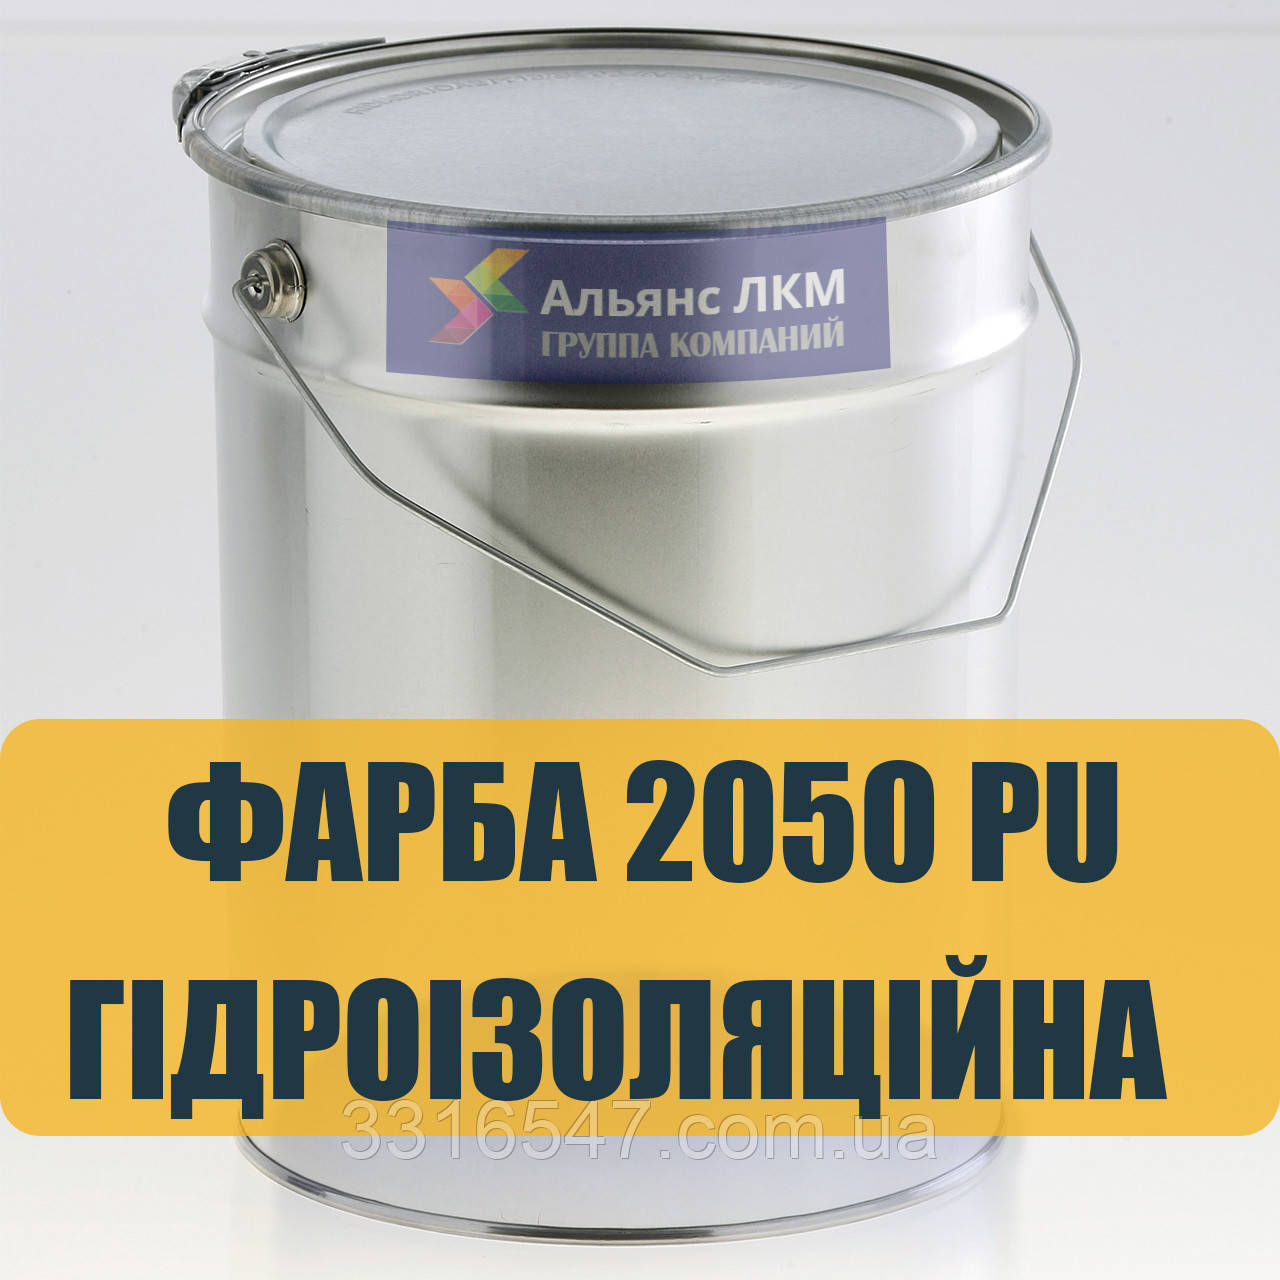 Фарба гідроізоляційна поліуретанова 2050 PU TOP для дахів і фасадів (9 кг.)